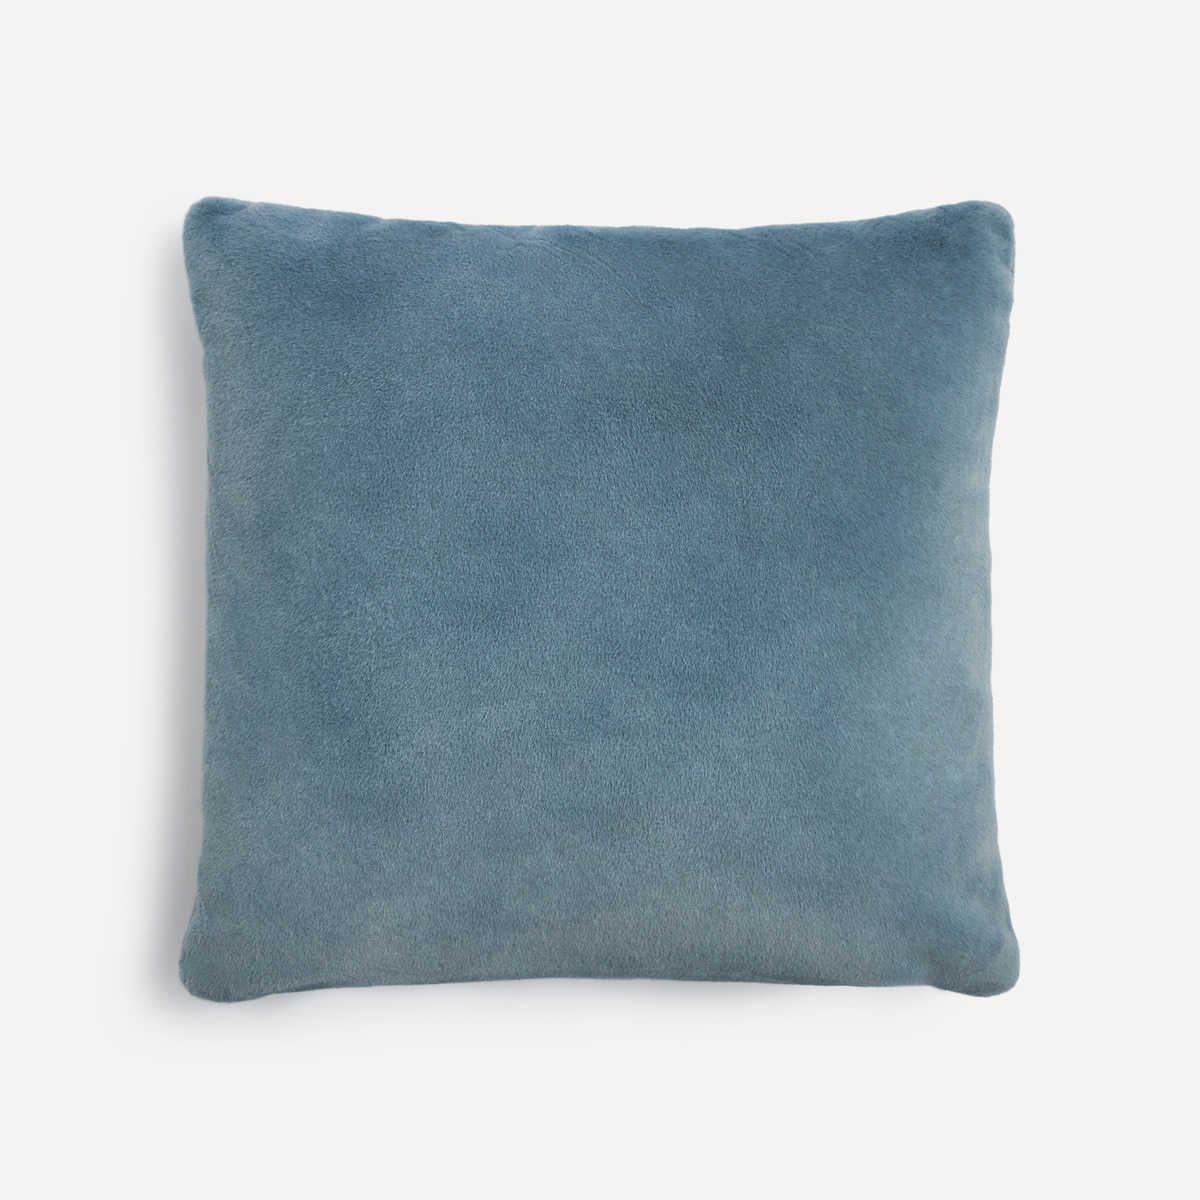 Меховая декоративная подушка Essenza, деним синий